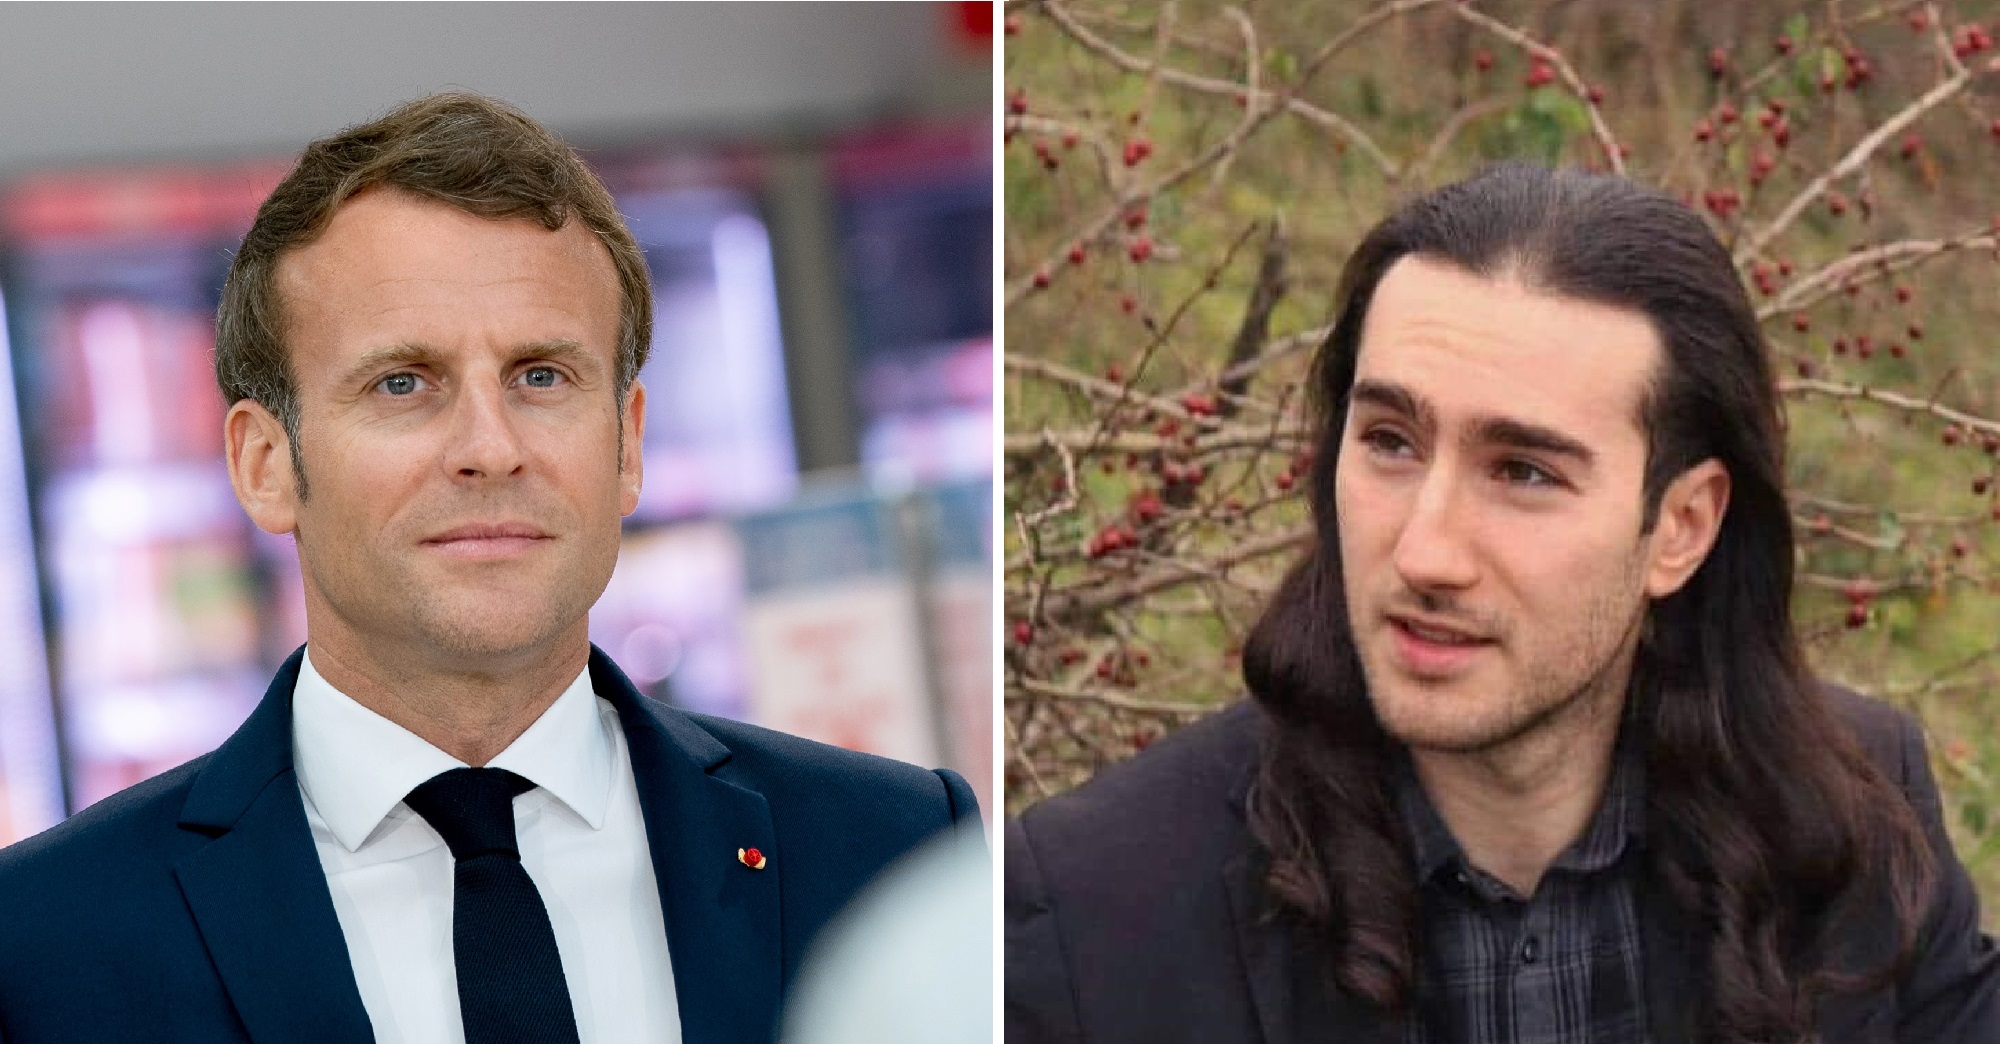 Le président de la République française et Damien Tarel, l’homme qui a giflé Emmanuel Macron.